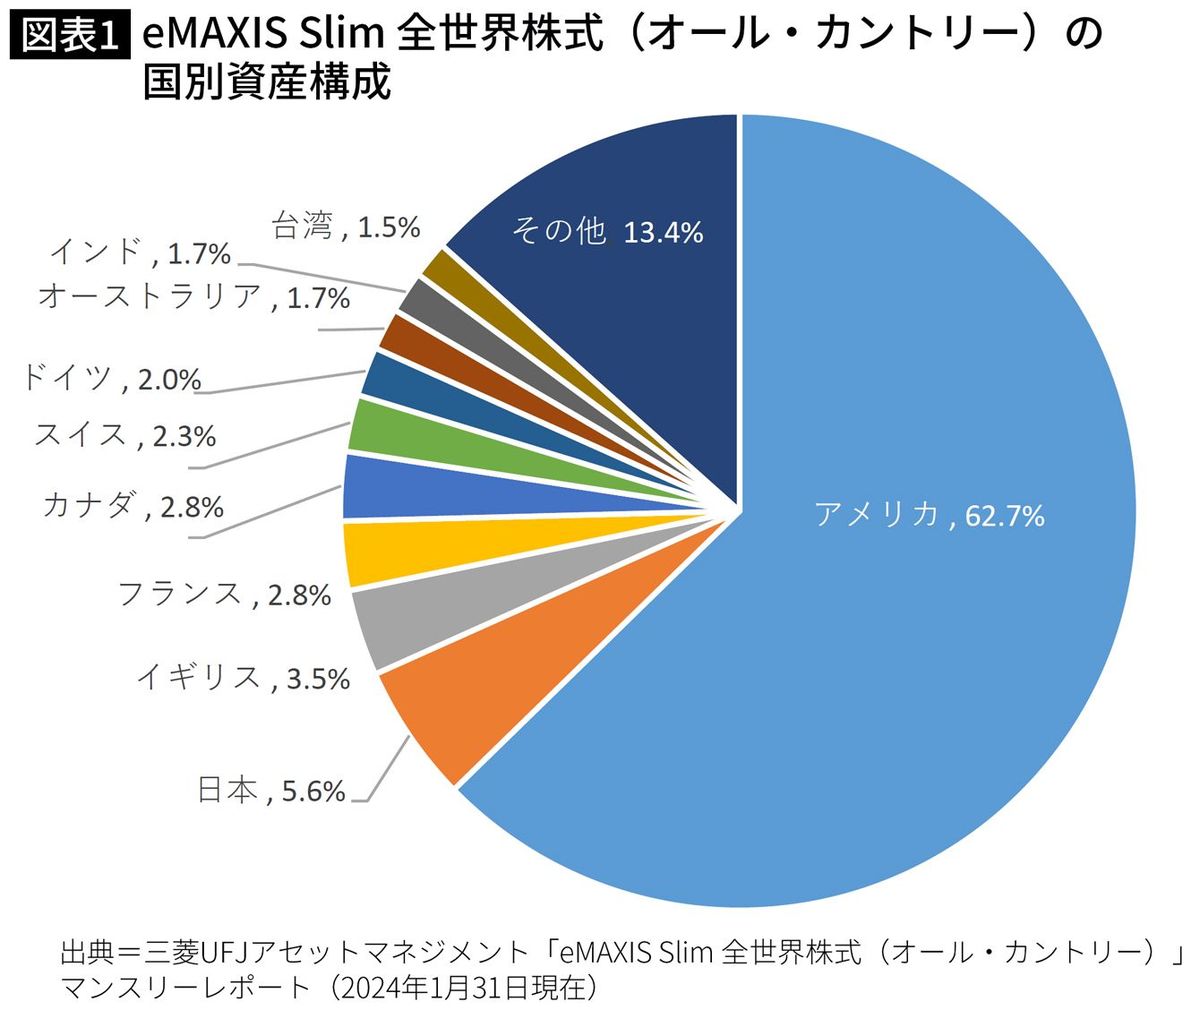 【図表】eMAXIS Slim 全世界株式（オール・カントリー）の国別資産構成